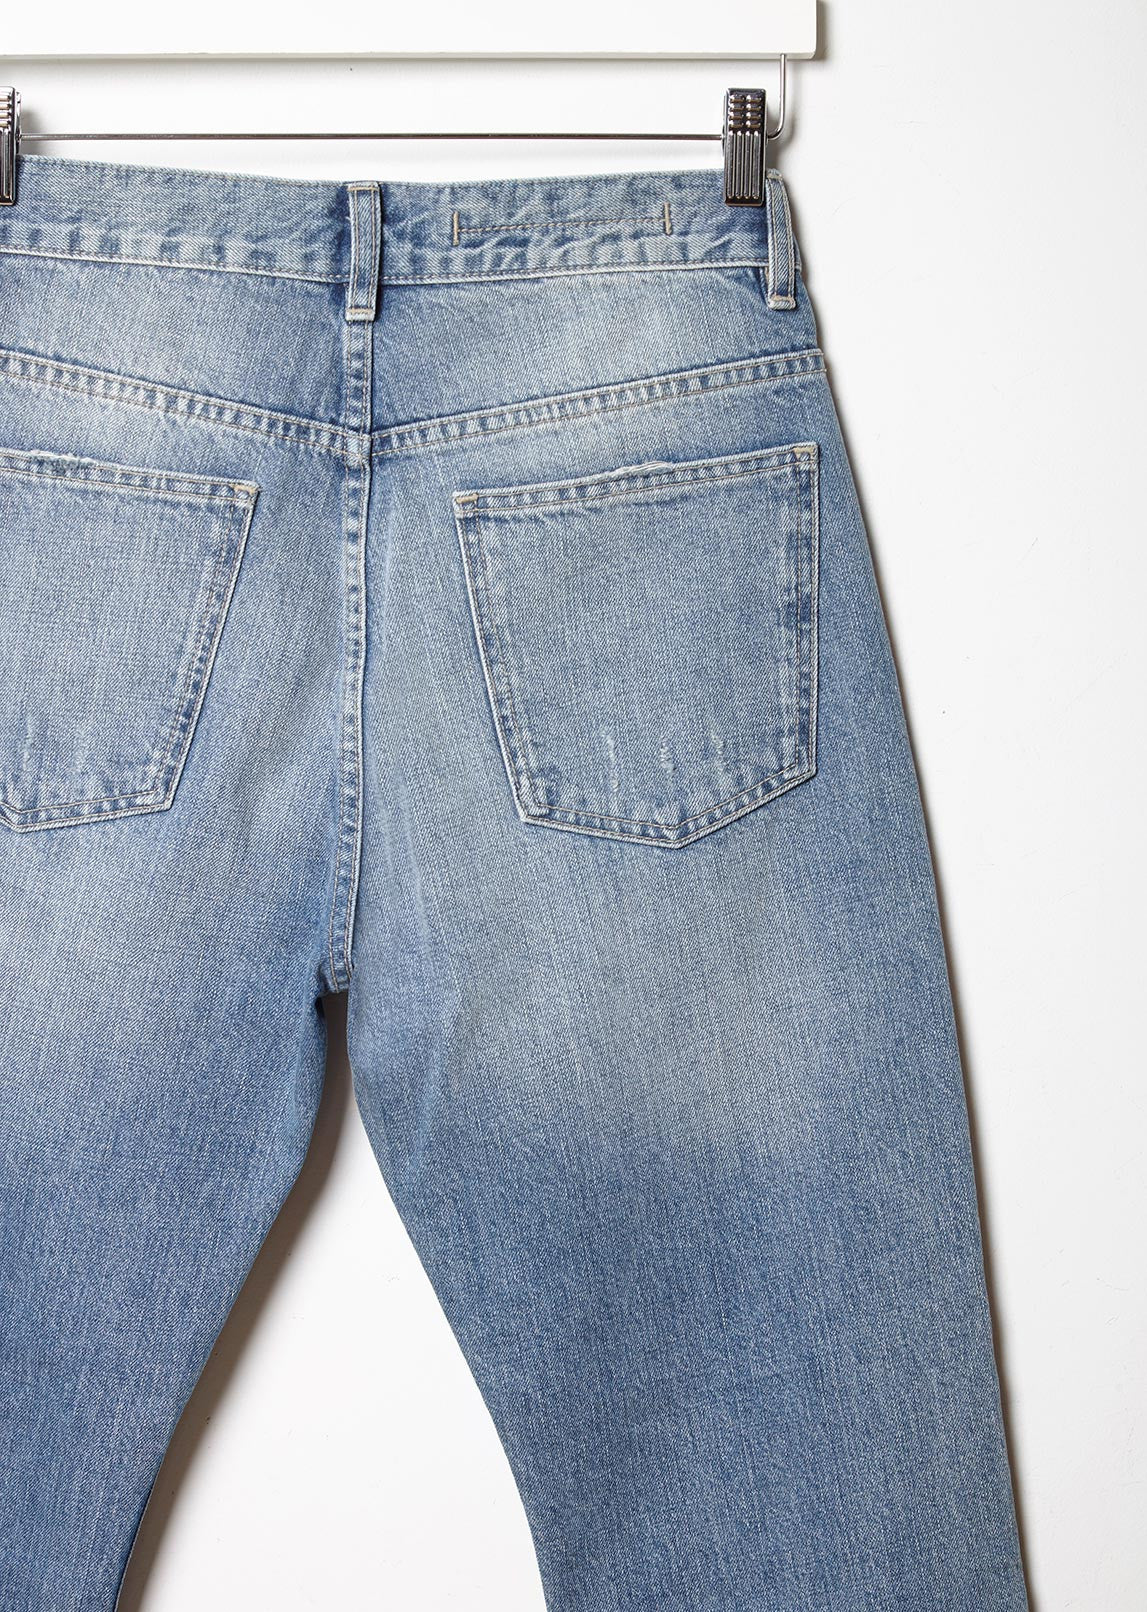 Men - Blue Slim Jeans - Size: 30/32 - H&M